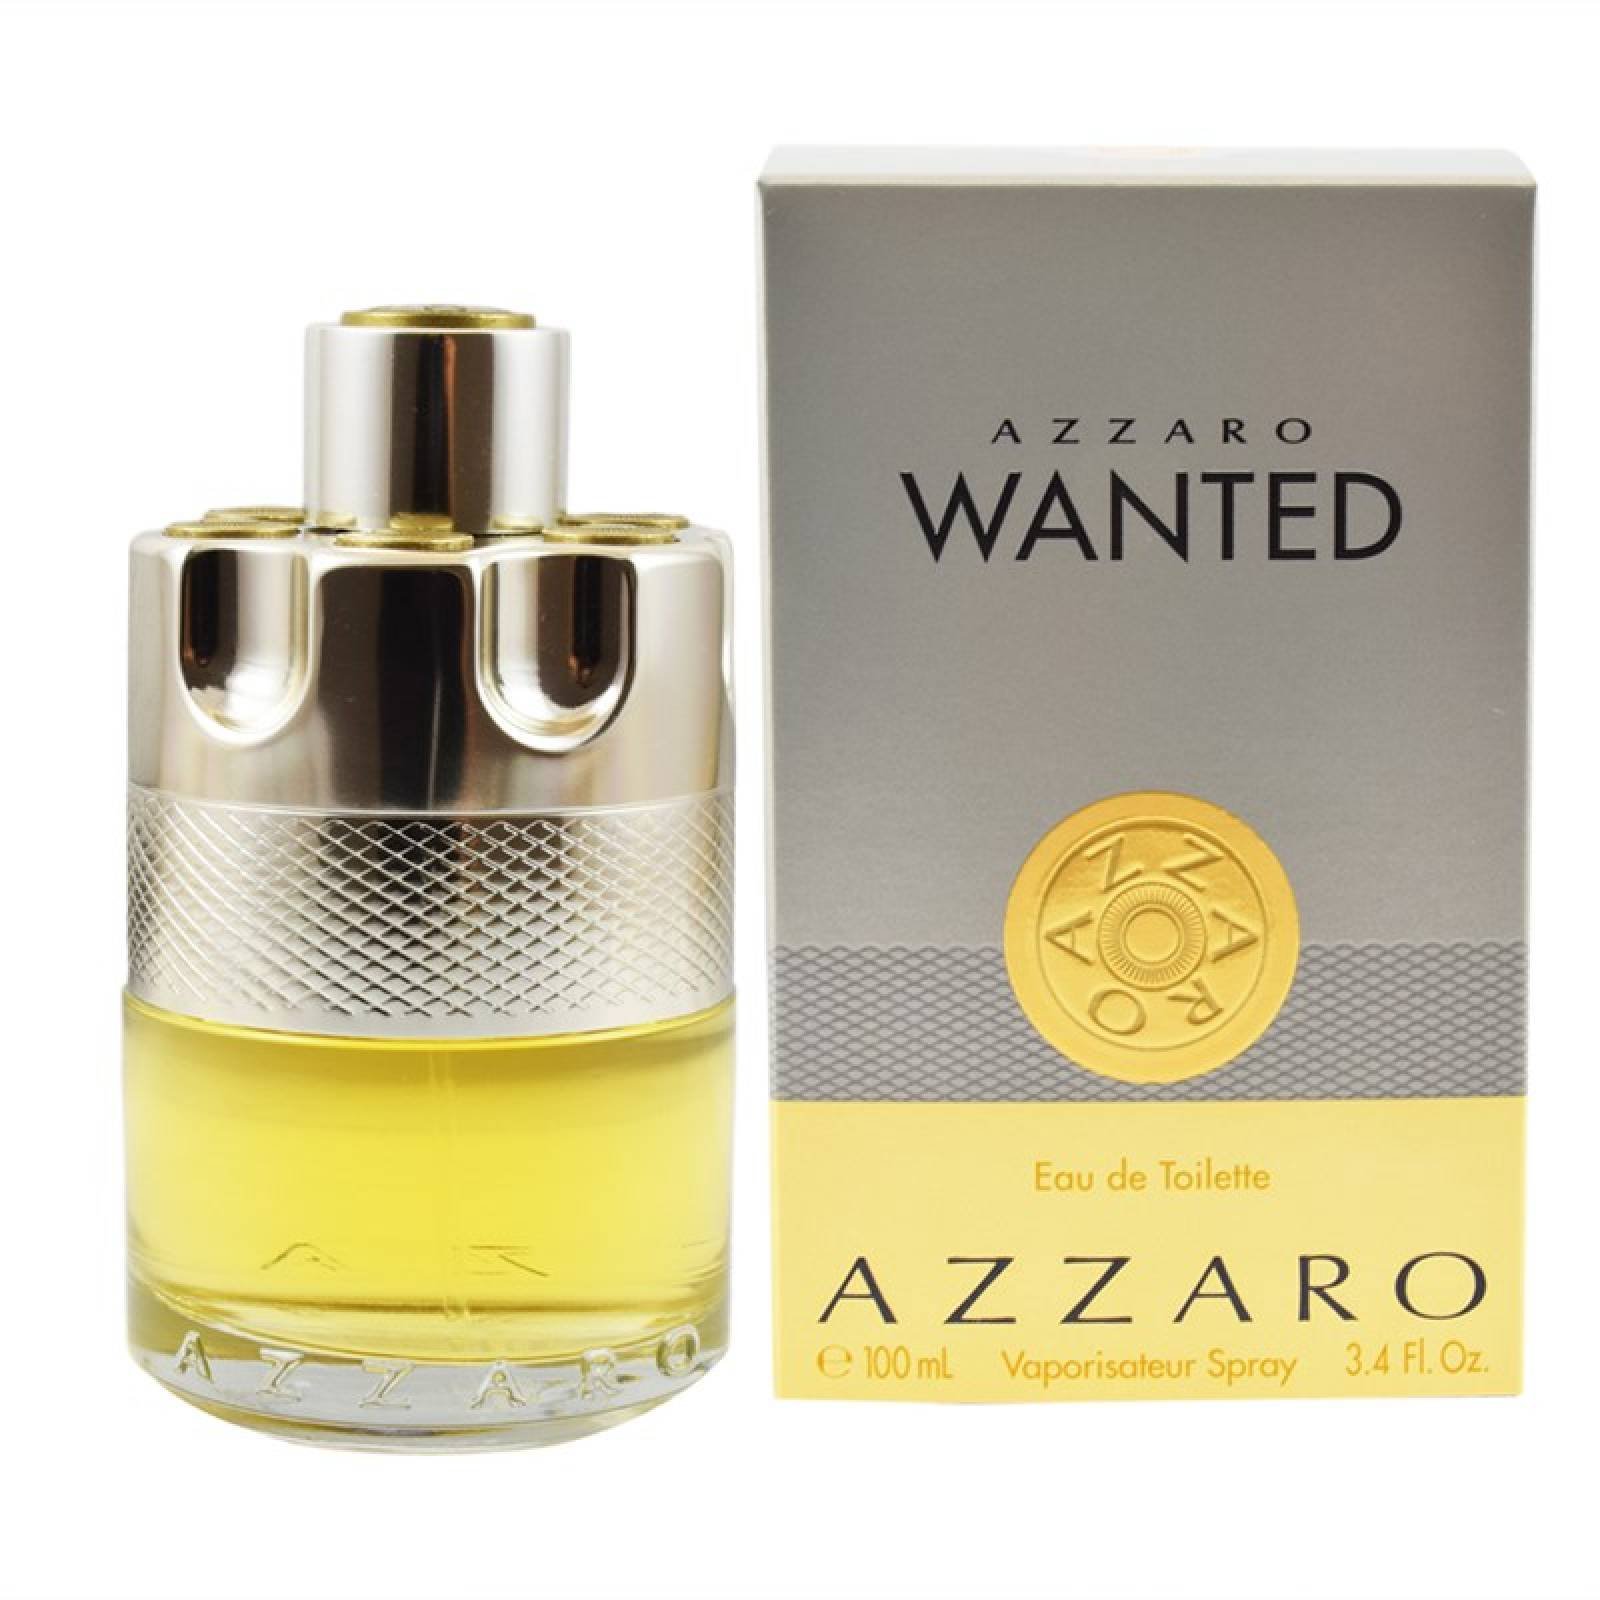 Azzaro Wanted 100ml Eau de Toilette Spray de Azzaro Fragancia para Caballero